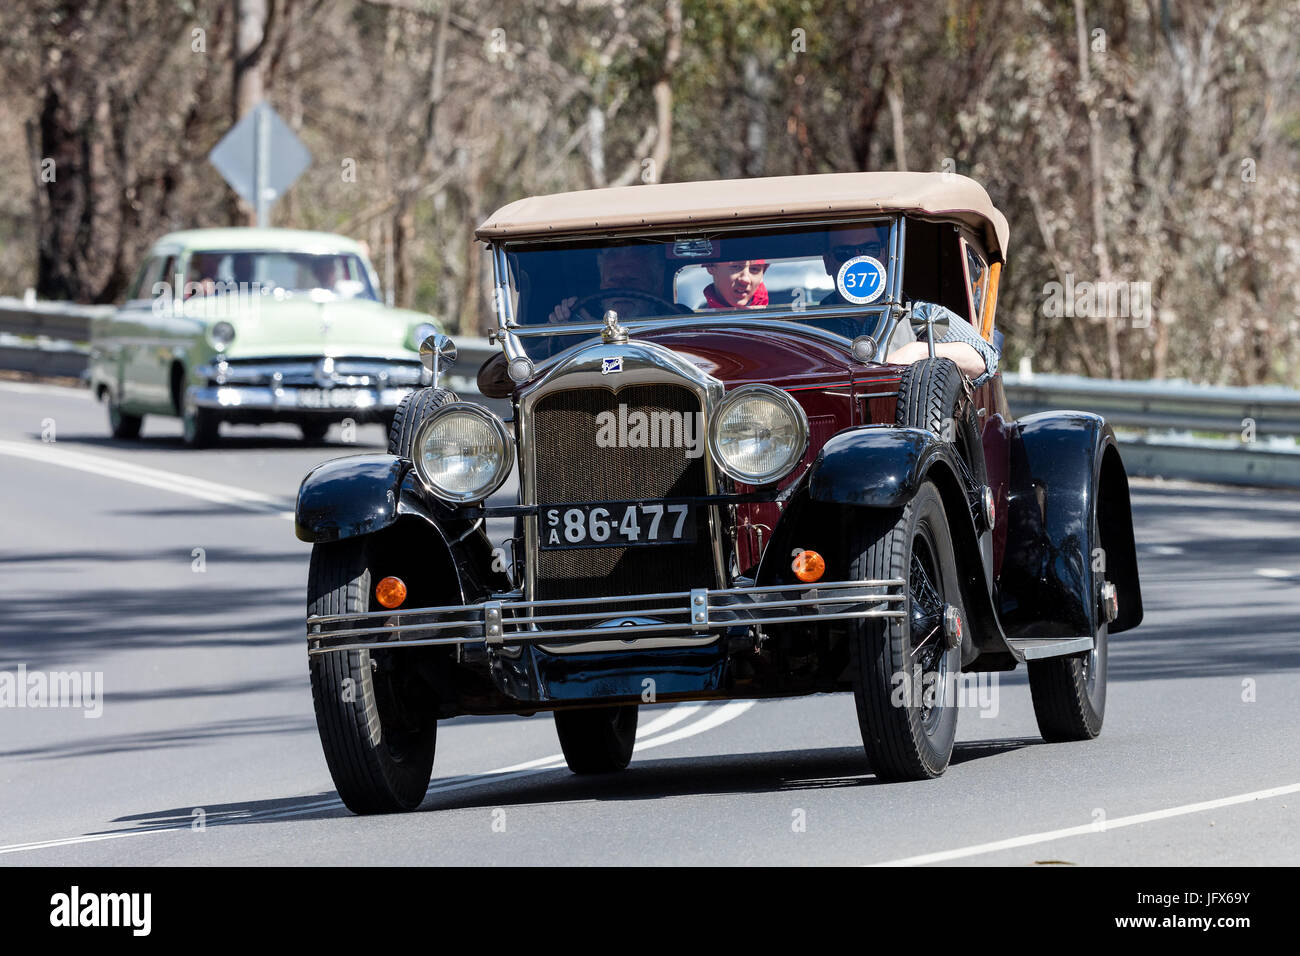 Jahrgang 1927 Buick Sport Roadster Cabrio fahren auf der Landstraße in der Nähe der Stadt Birdwood, South Australia. Stockfoto